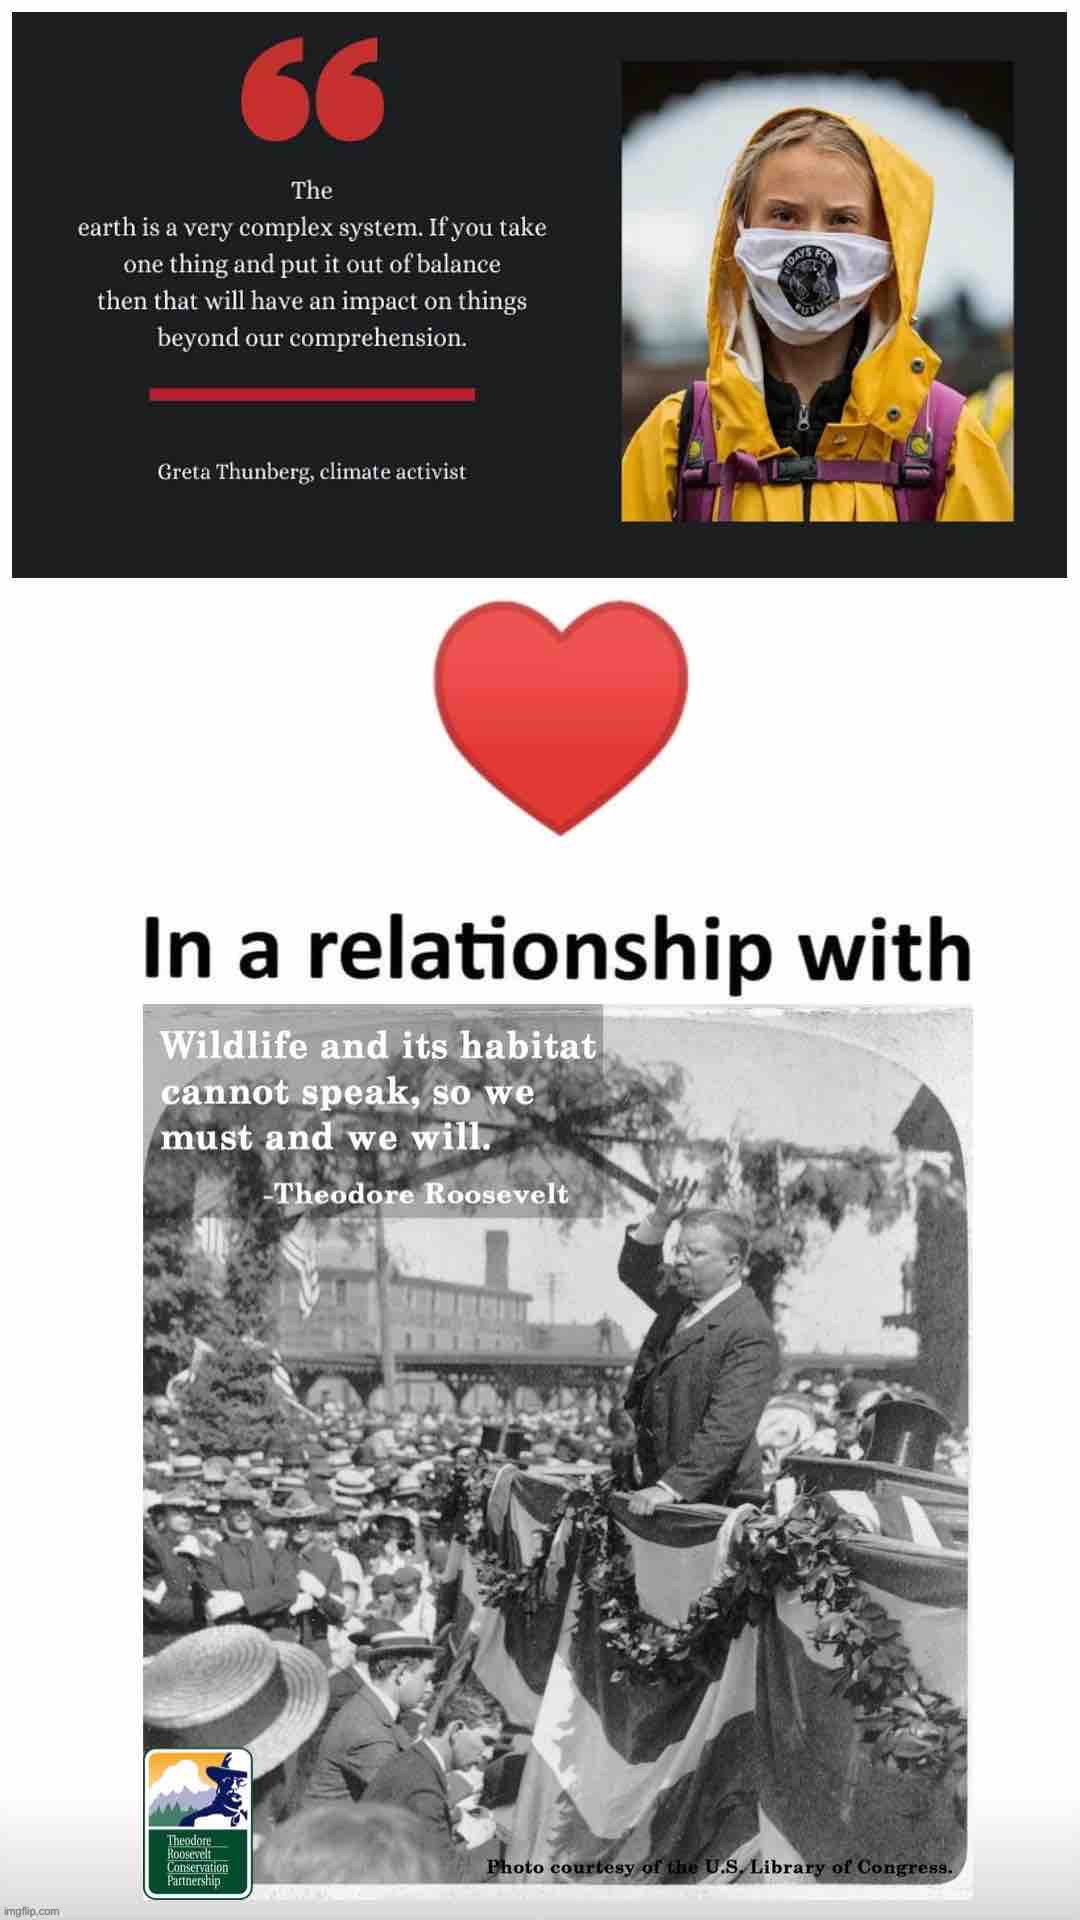 Greta Thunberg vs. Teddy Roosevelt environment | image tagged in greta thunberg vs teddy roosevelt environment | made w/ Imgflip meme maker